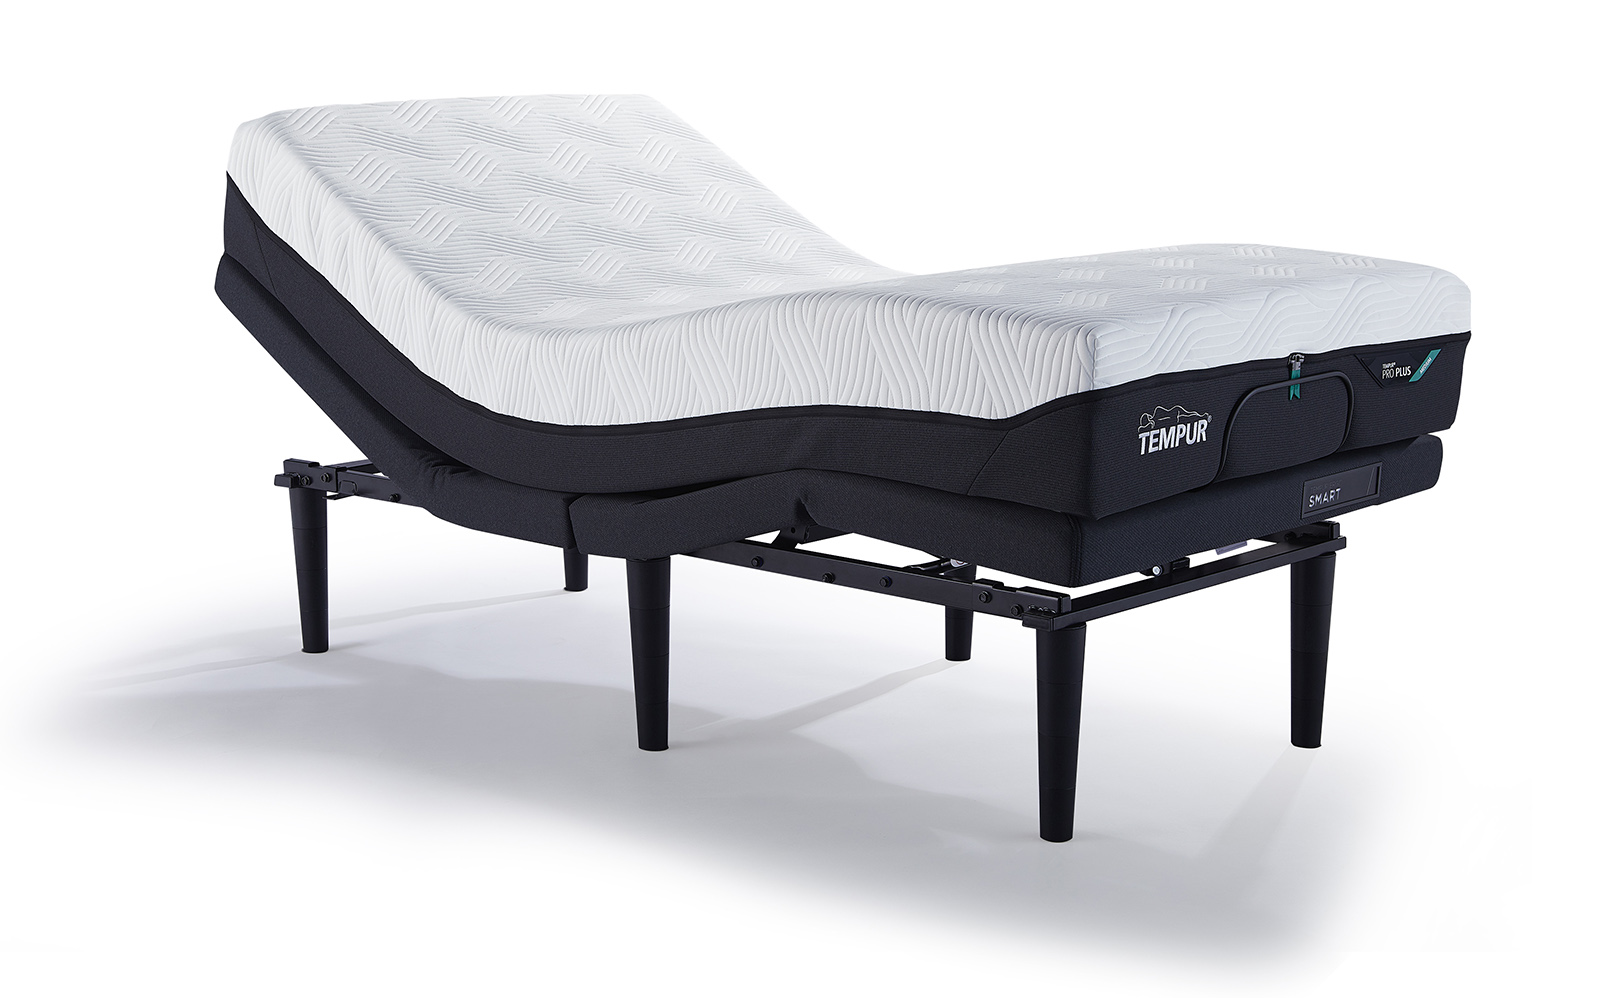 いびきを感知し自動でベッドが作動！ 質の高い睡眠を提供するスマートベッド「テンピュール® エルゴ スマート」が登場 イメージ画像